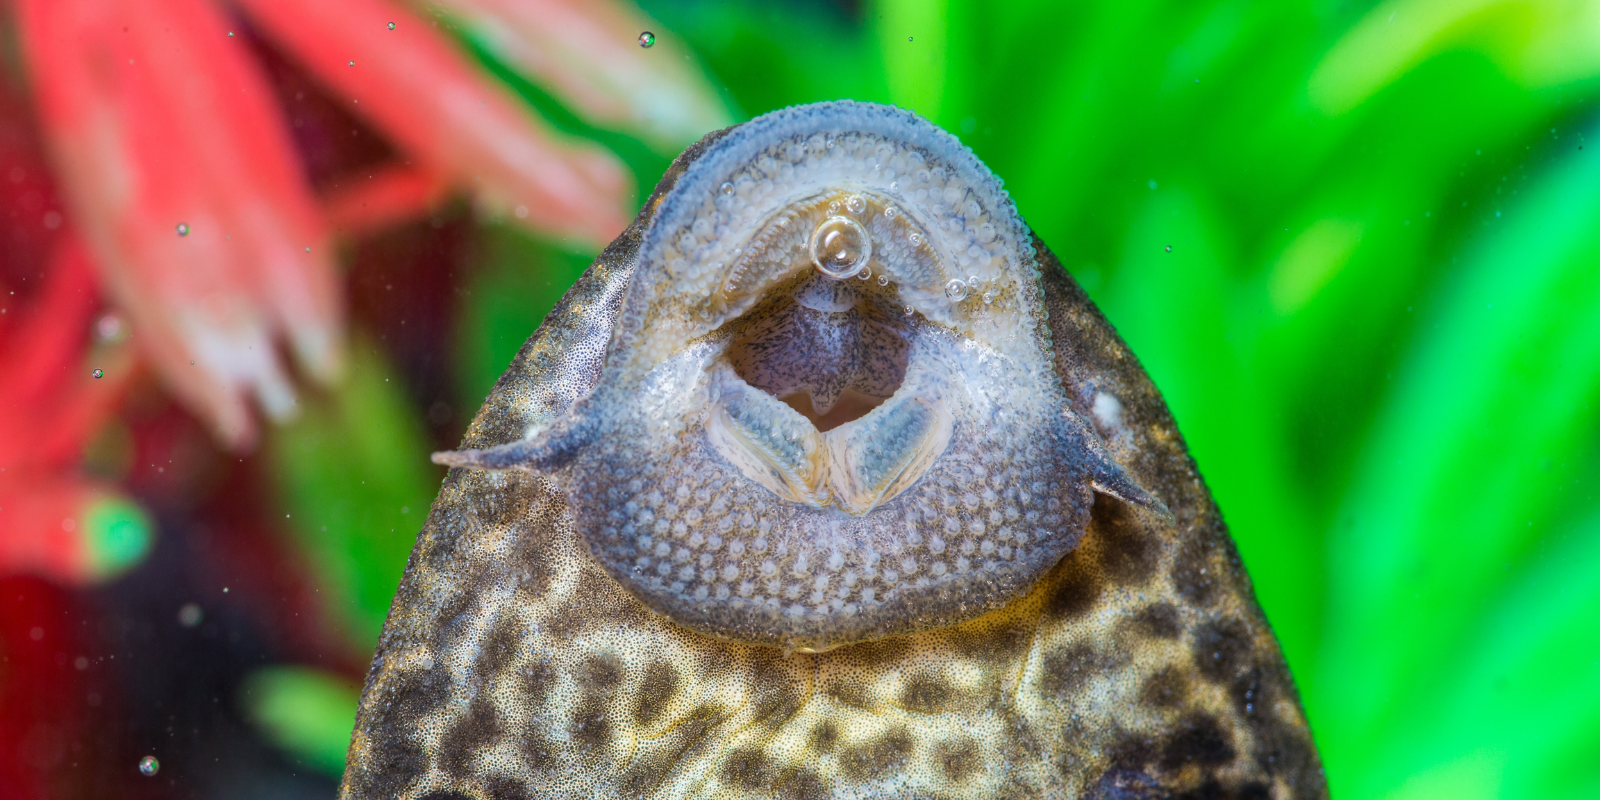 Nærbillede af en sugemalles mund - en ancistrus er suget fast til glasset i et akvarie.